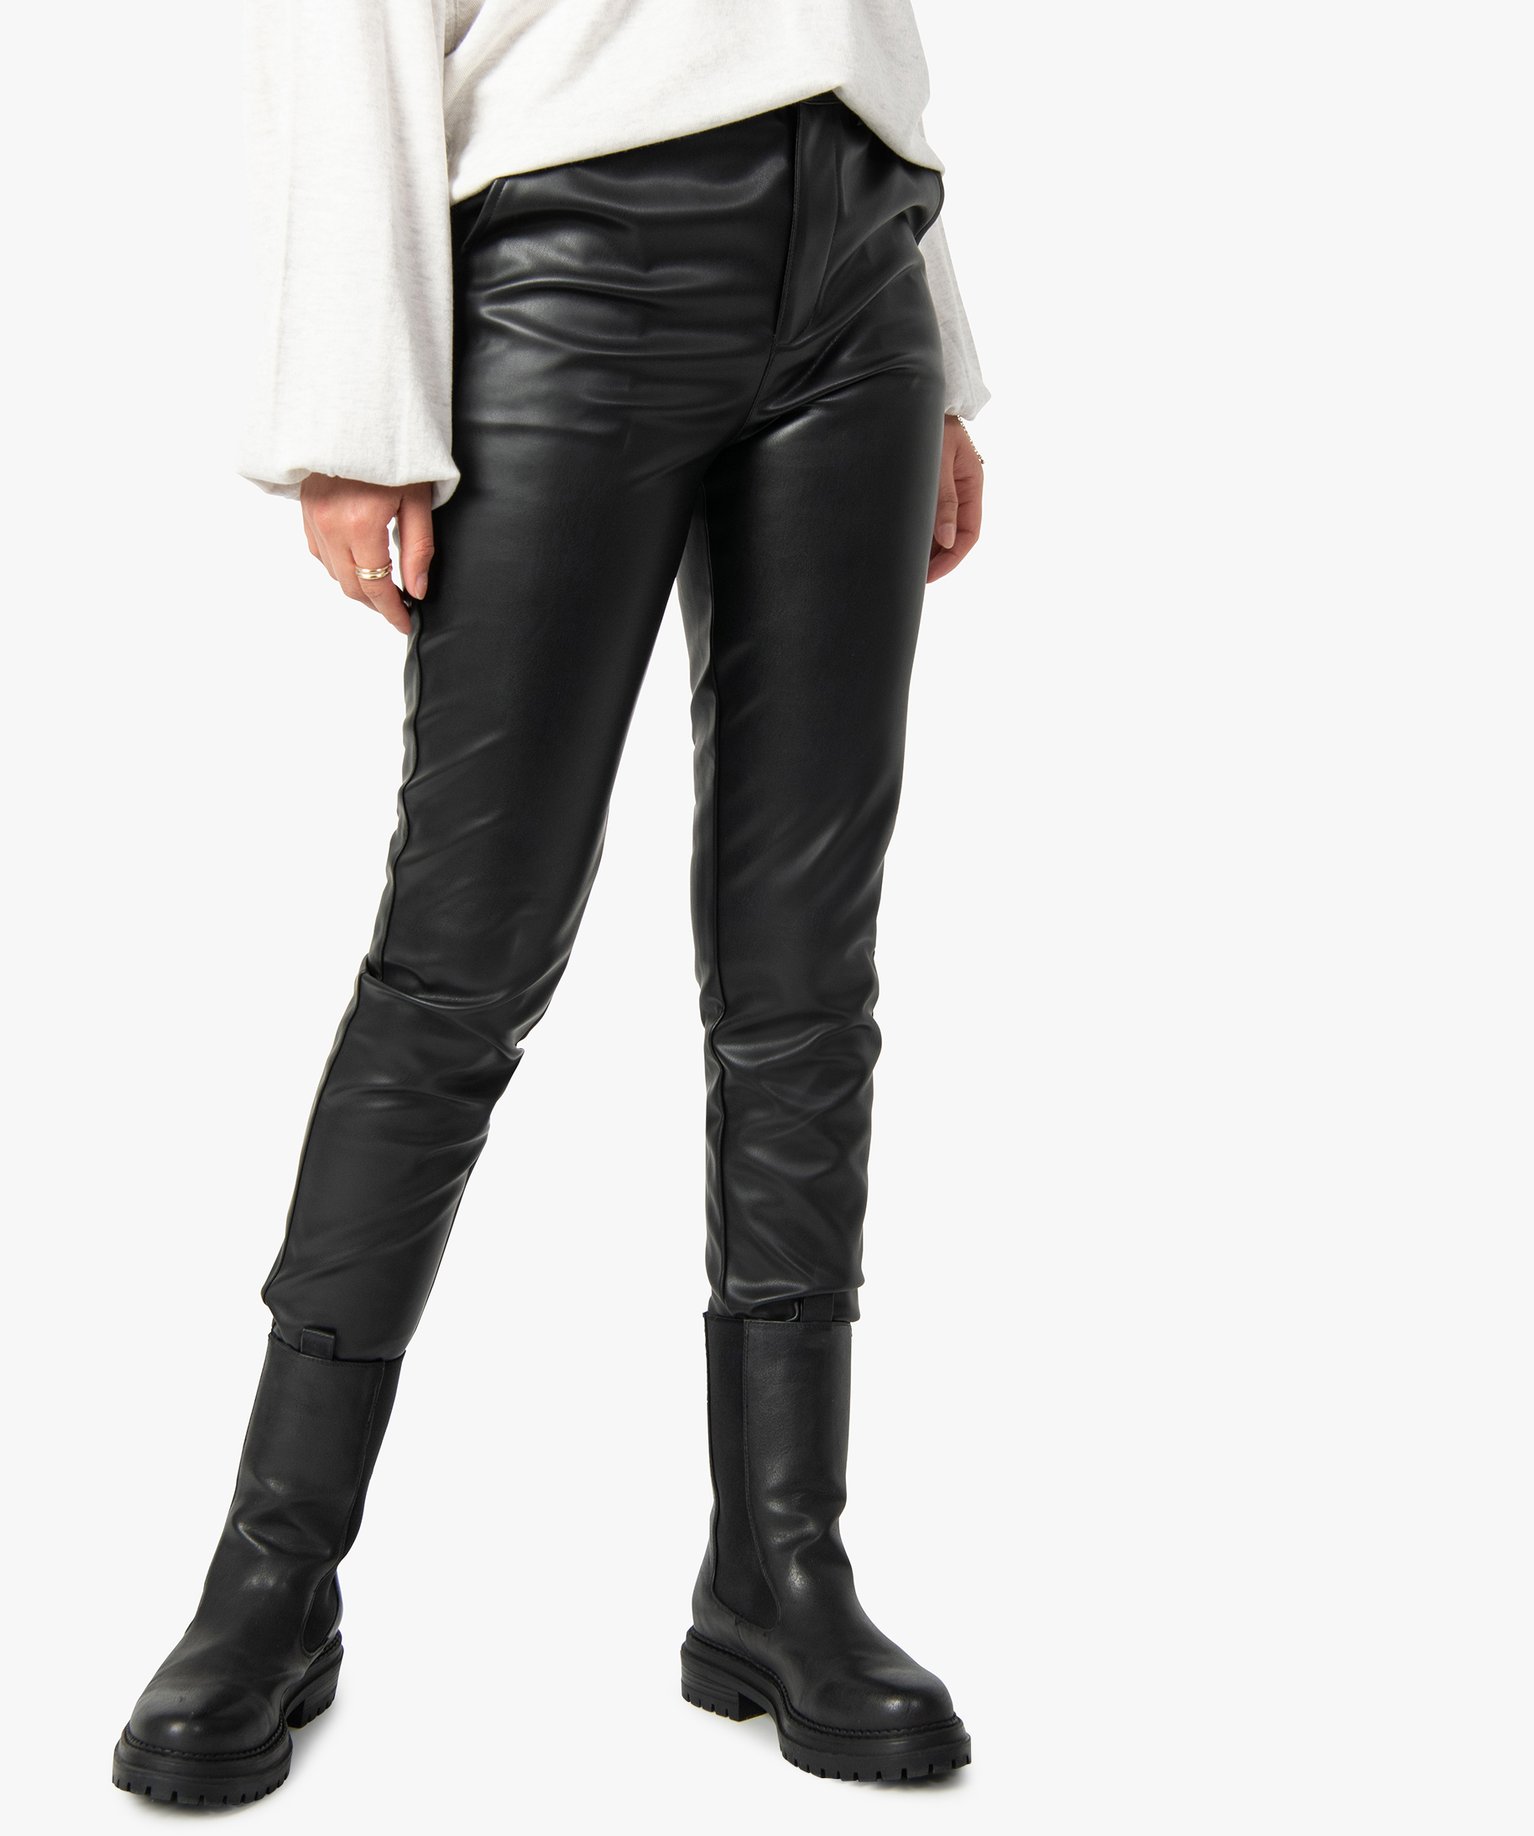 pantalon femme en synthetique imitation cuir noir leggings et jeggings